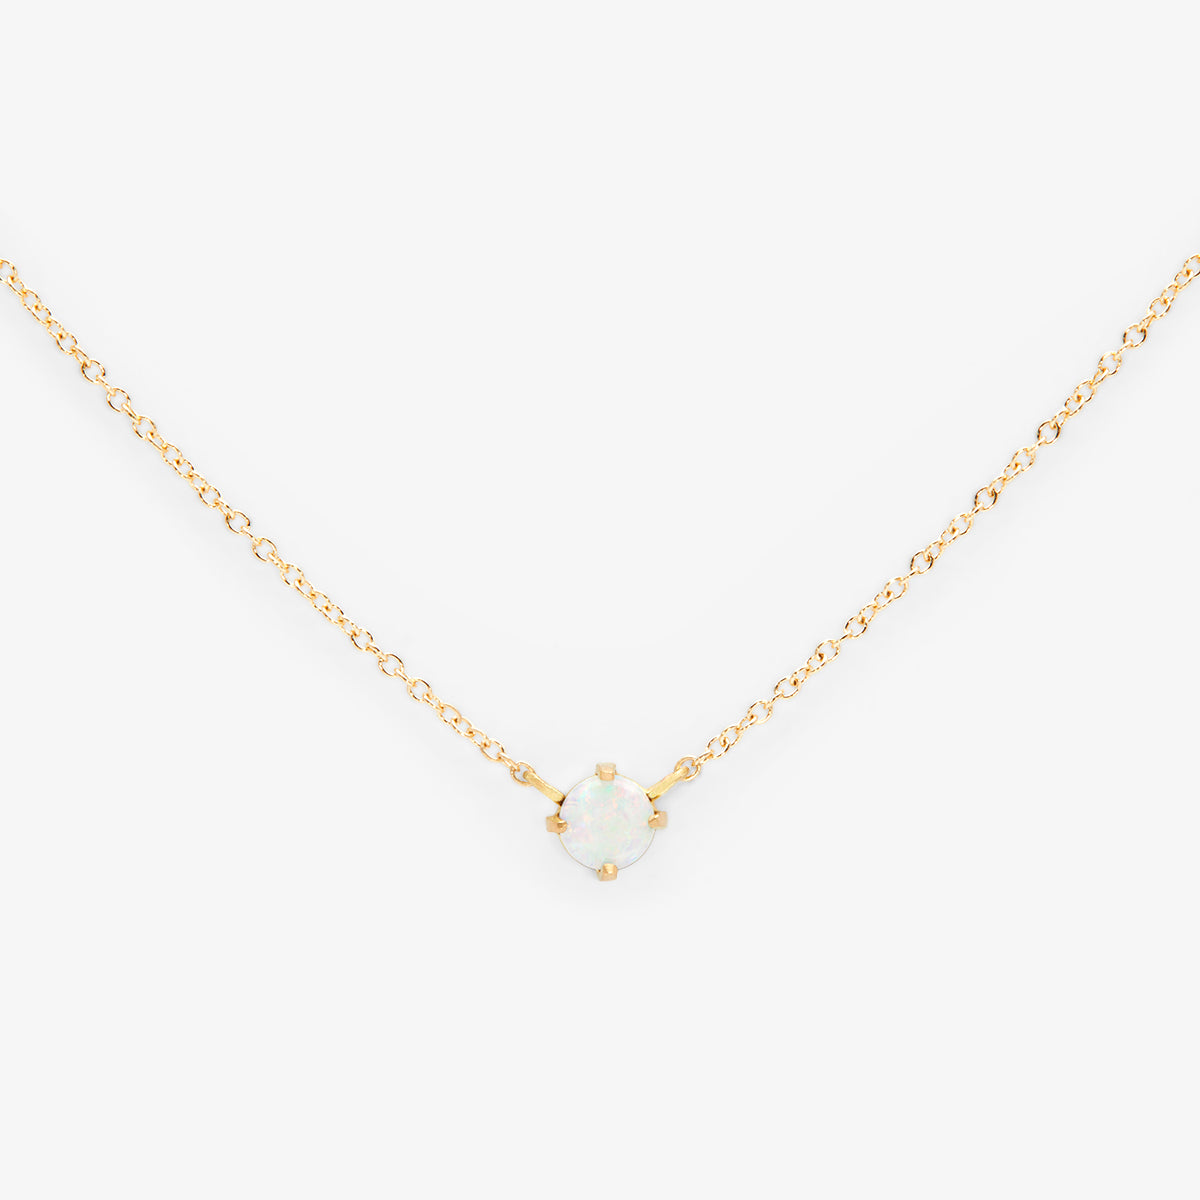 Australian White Opal Wisp Necklace